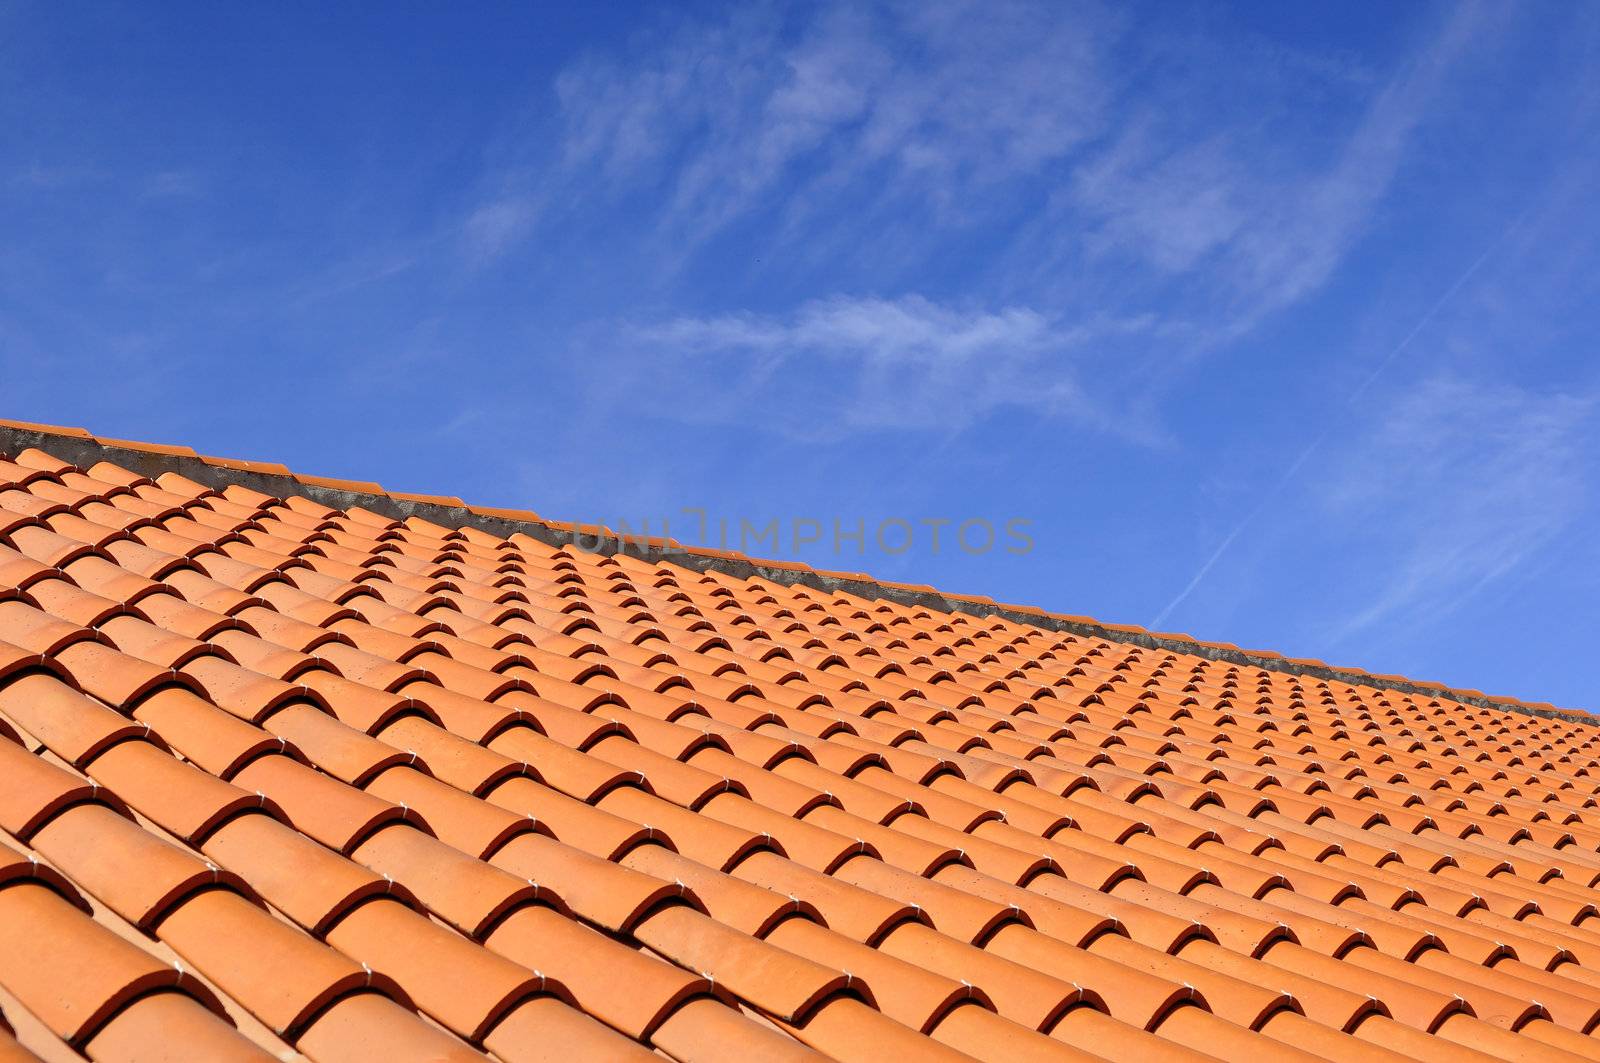 Roof Tiles by ruigsantos